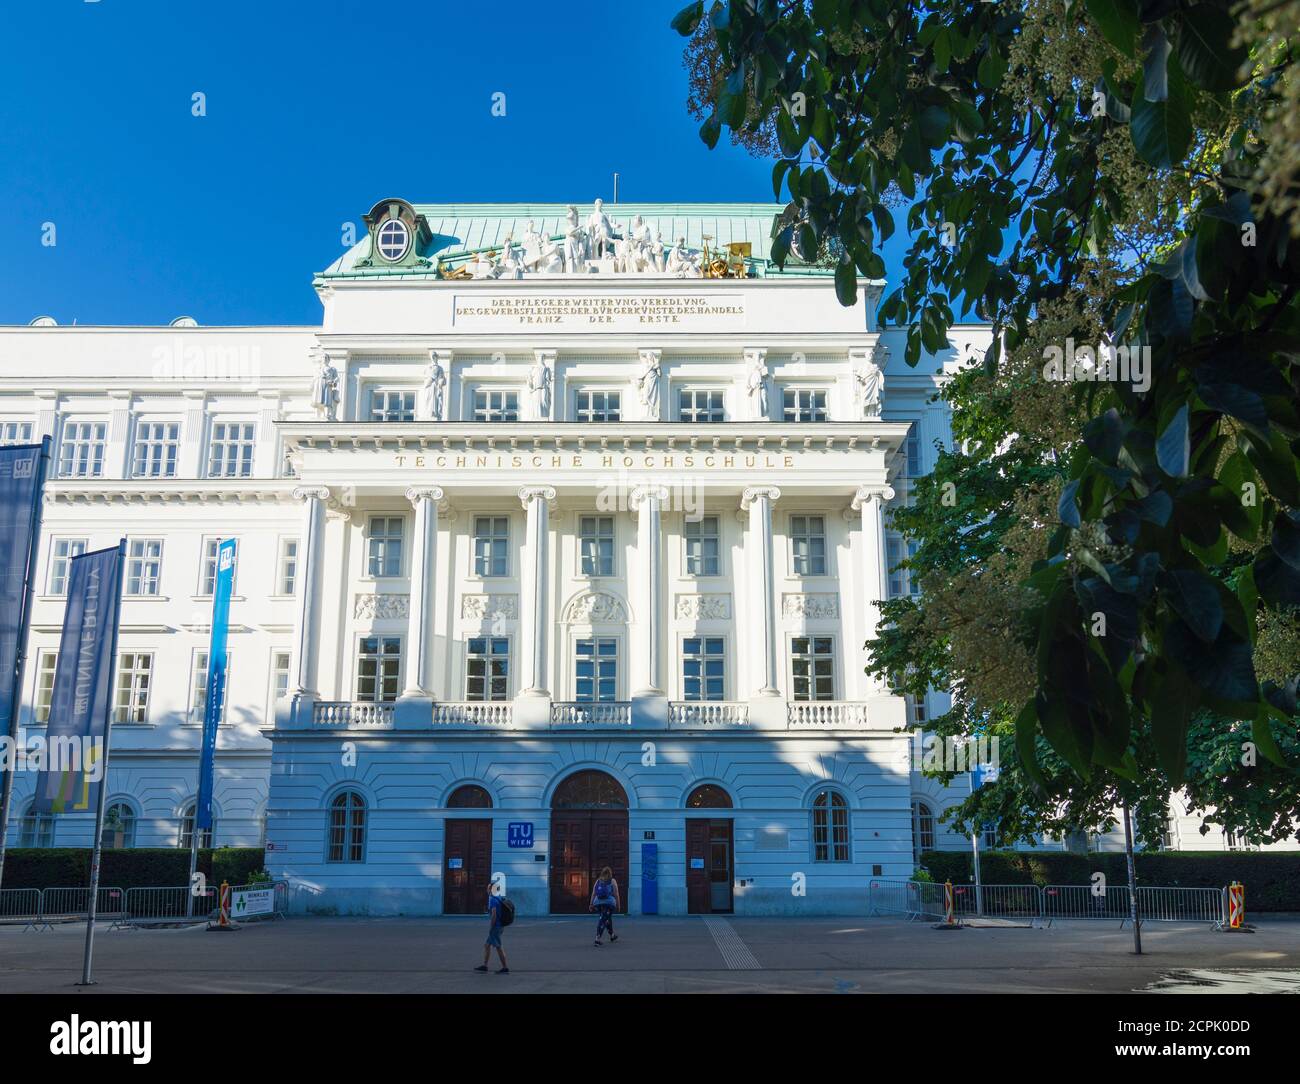 Wien / Vienna, Technische Universität TU Wien Hauptgebäude im Jahr 01.  Altstadt, Österreich Stockfotografie - Alamy